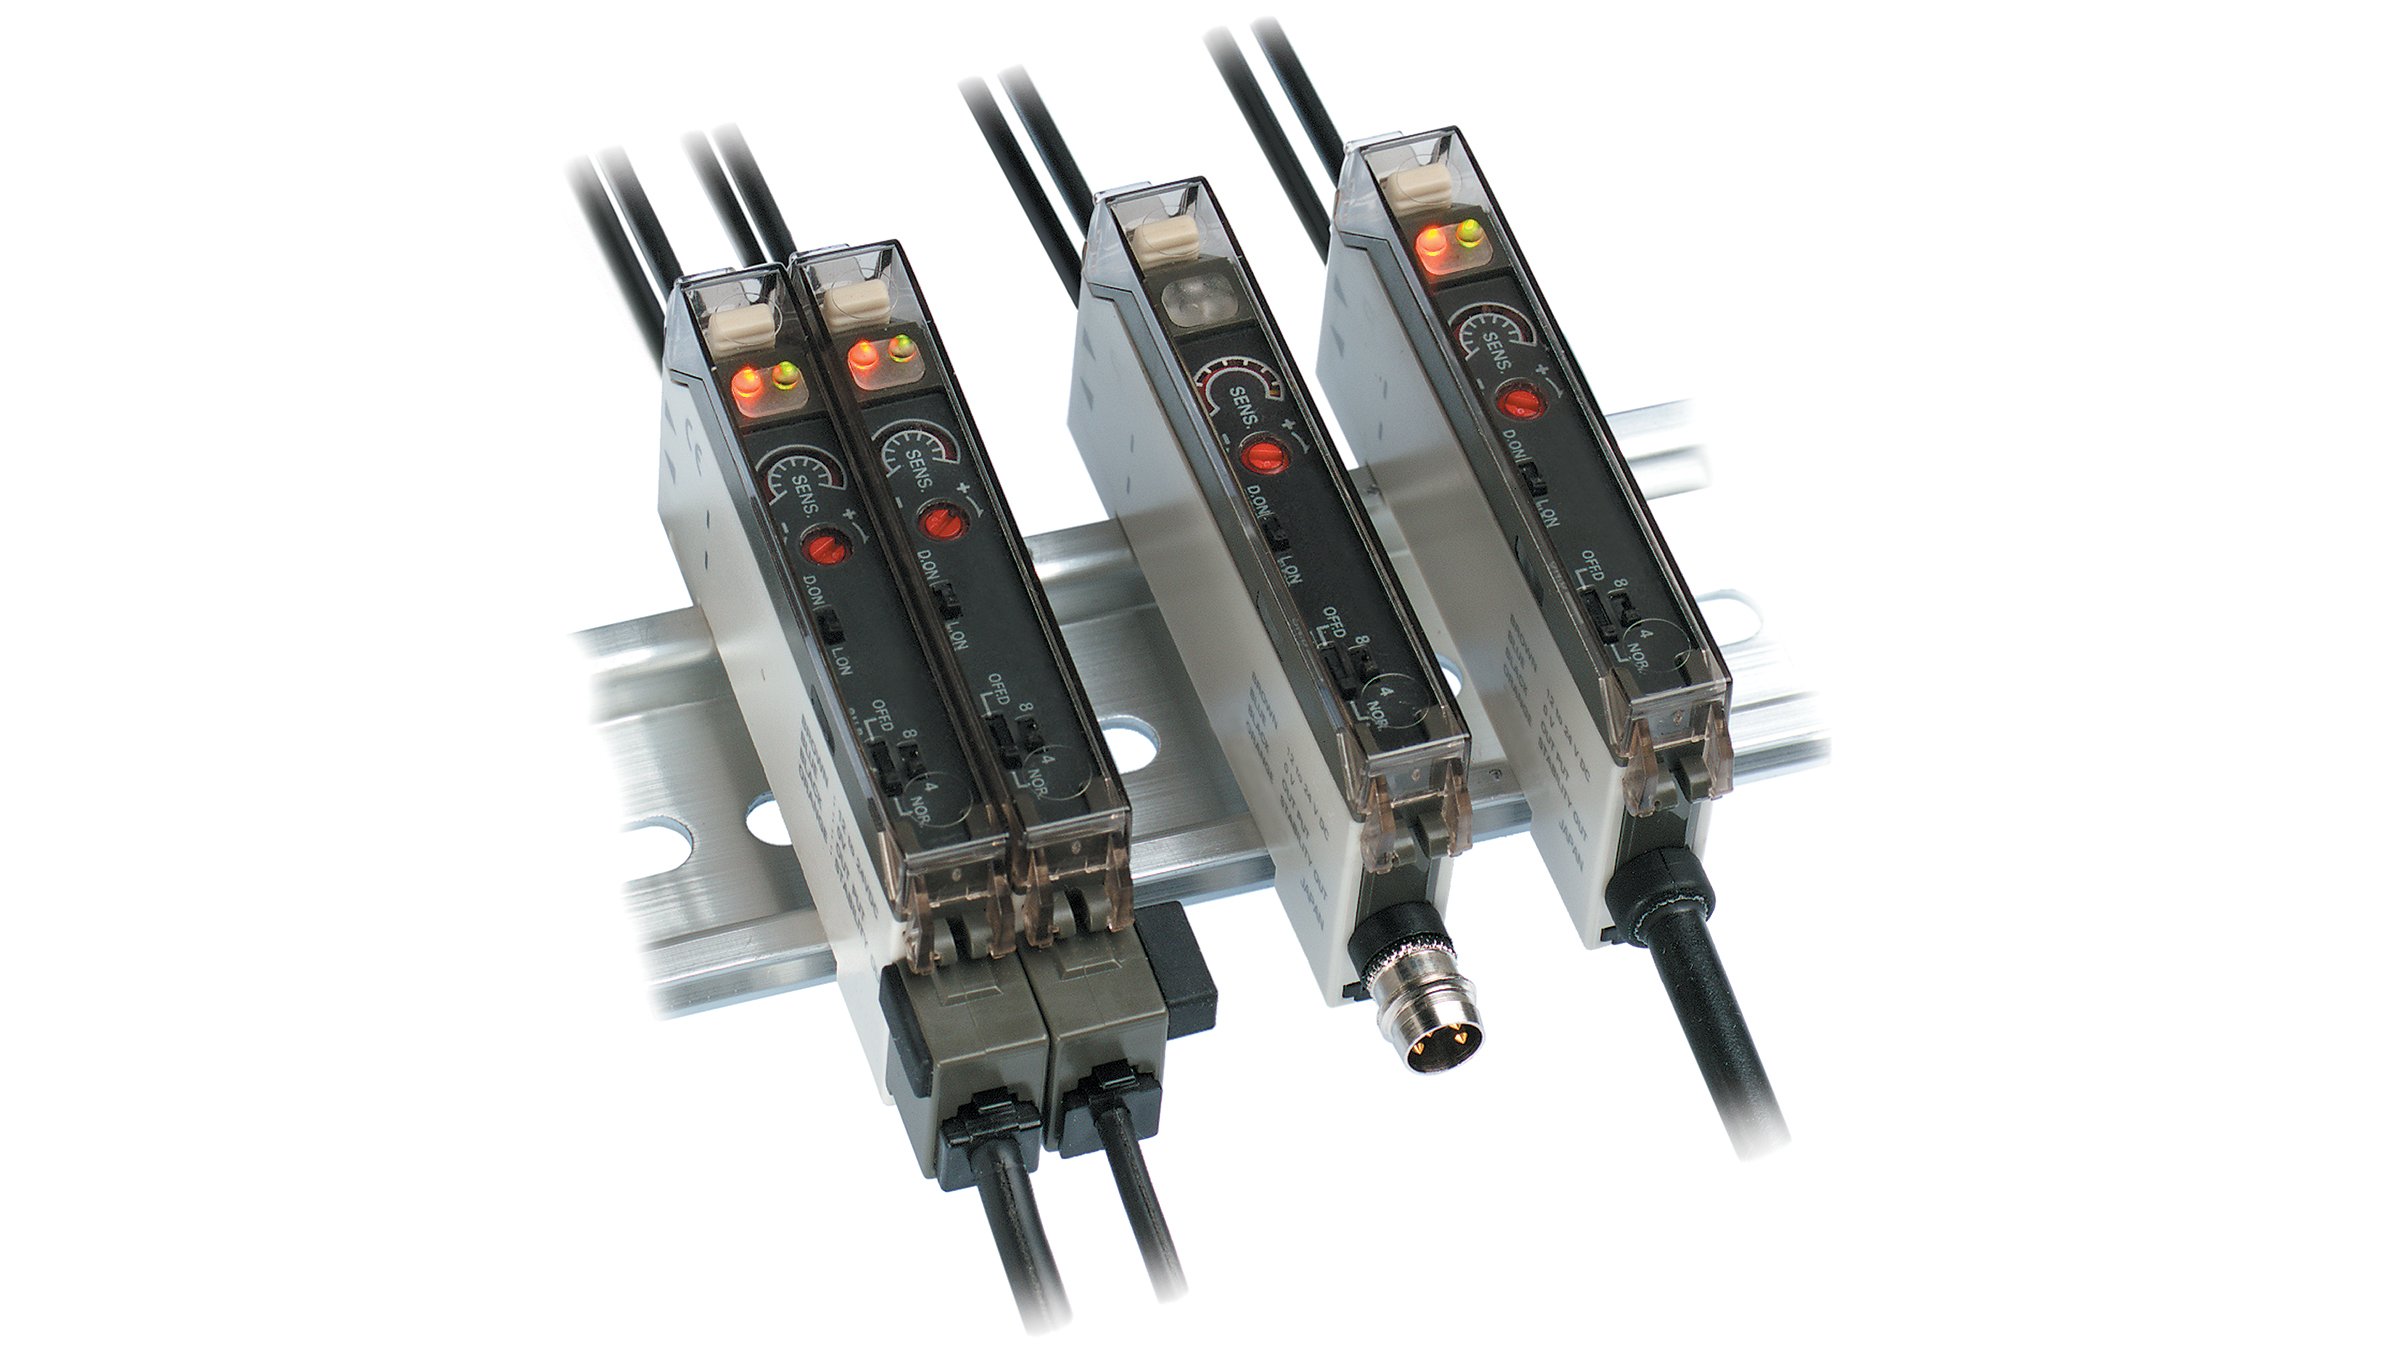 4 rechteckige Sensoren mit Kabeln an gegenüberliegenden Enden, montiert auf einer DIN-Schiene